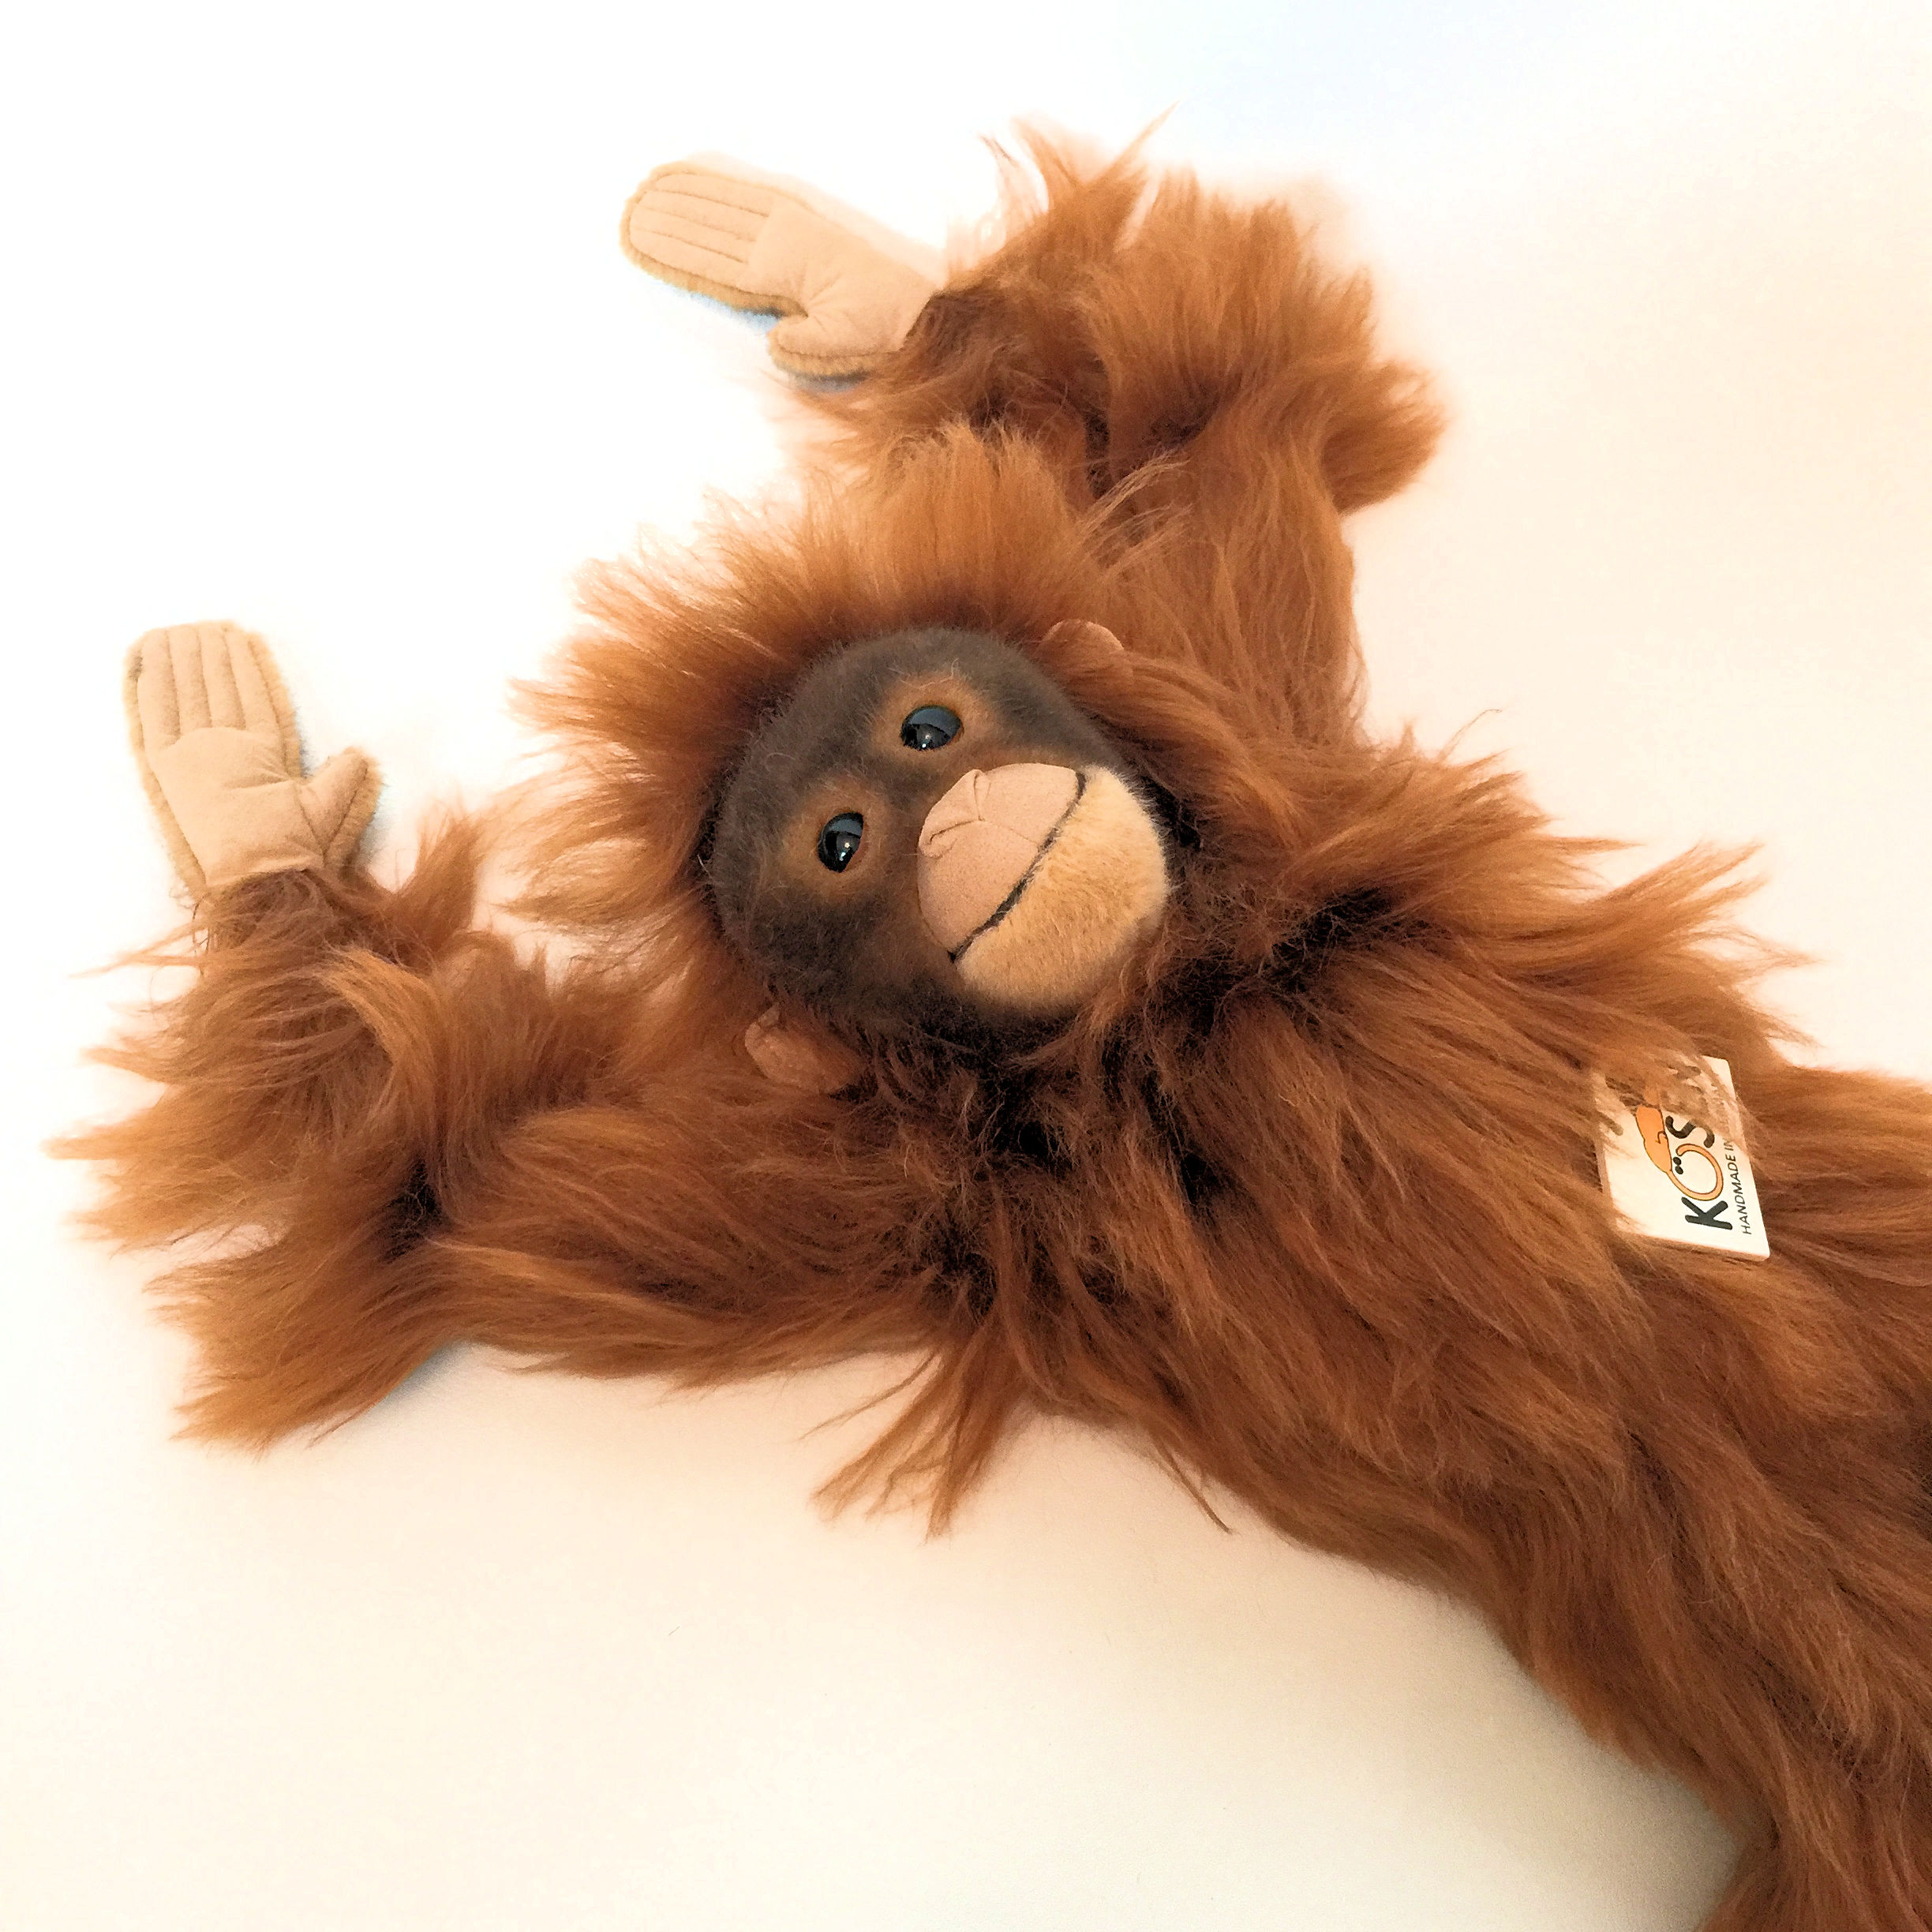 orangutan stuffed toy